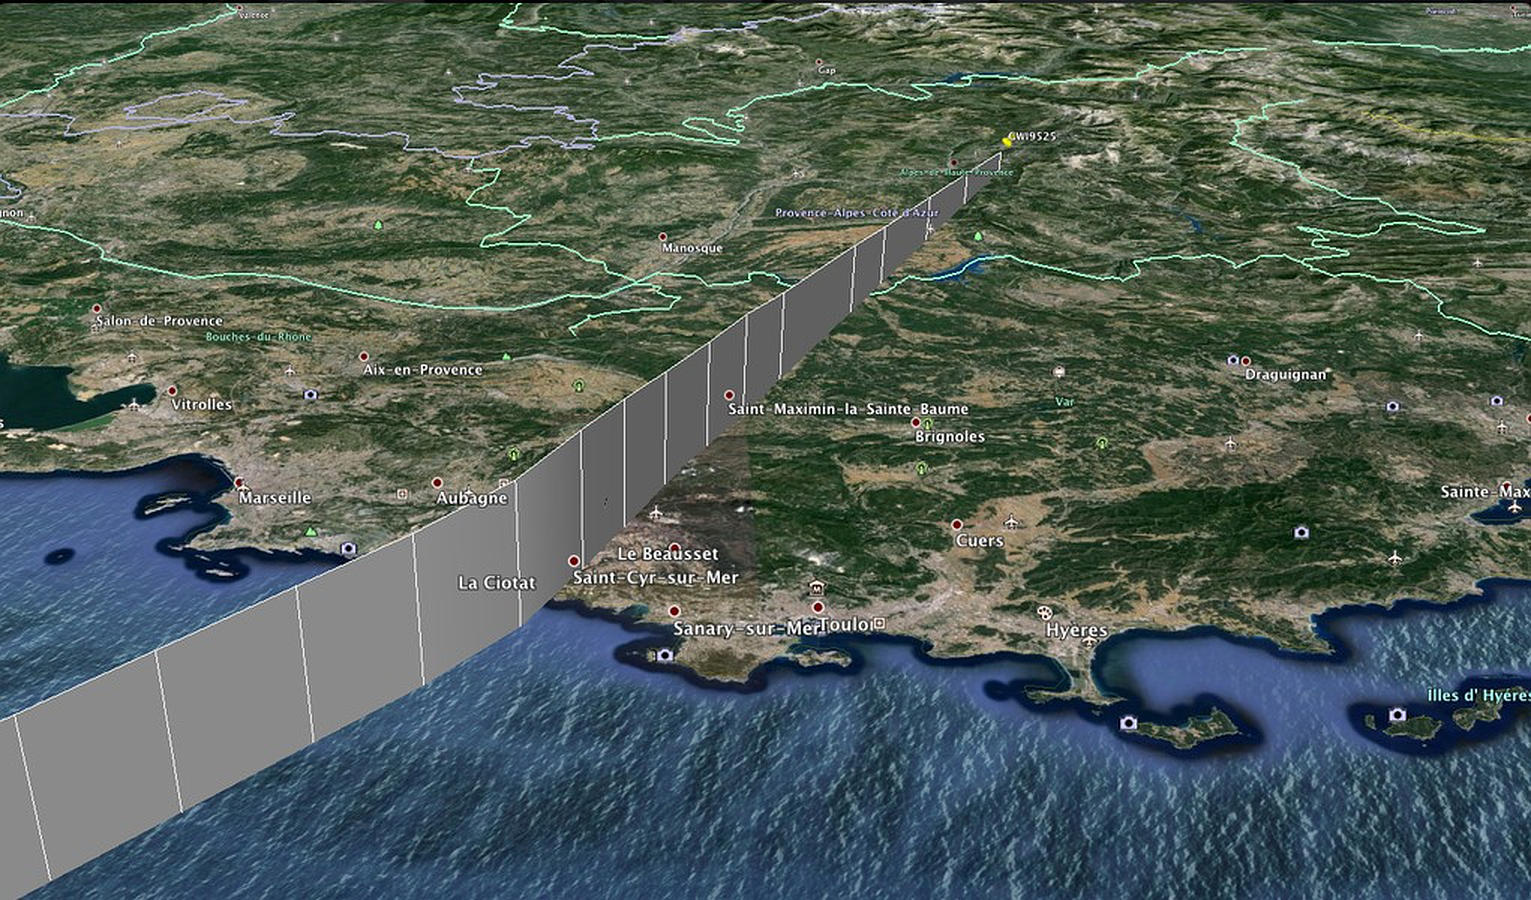 El mapa de la zona donde se ha producido el accidente del Airbus de Germanwings es de difícil acceso